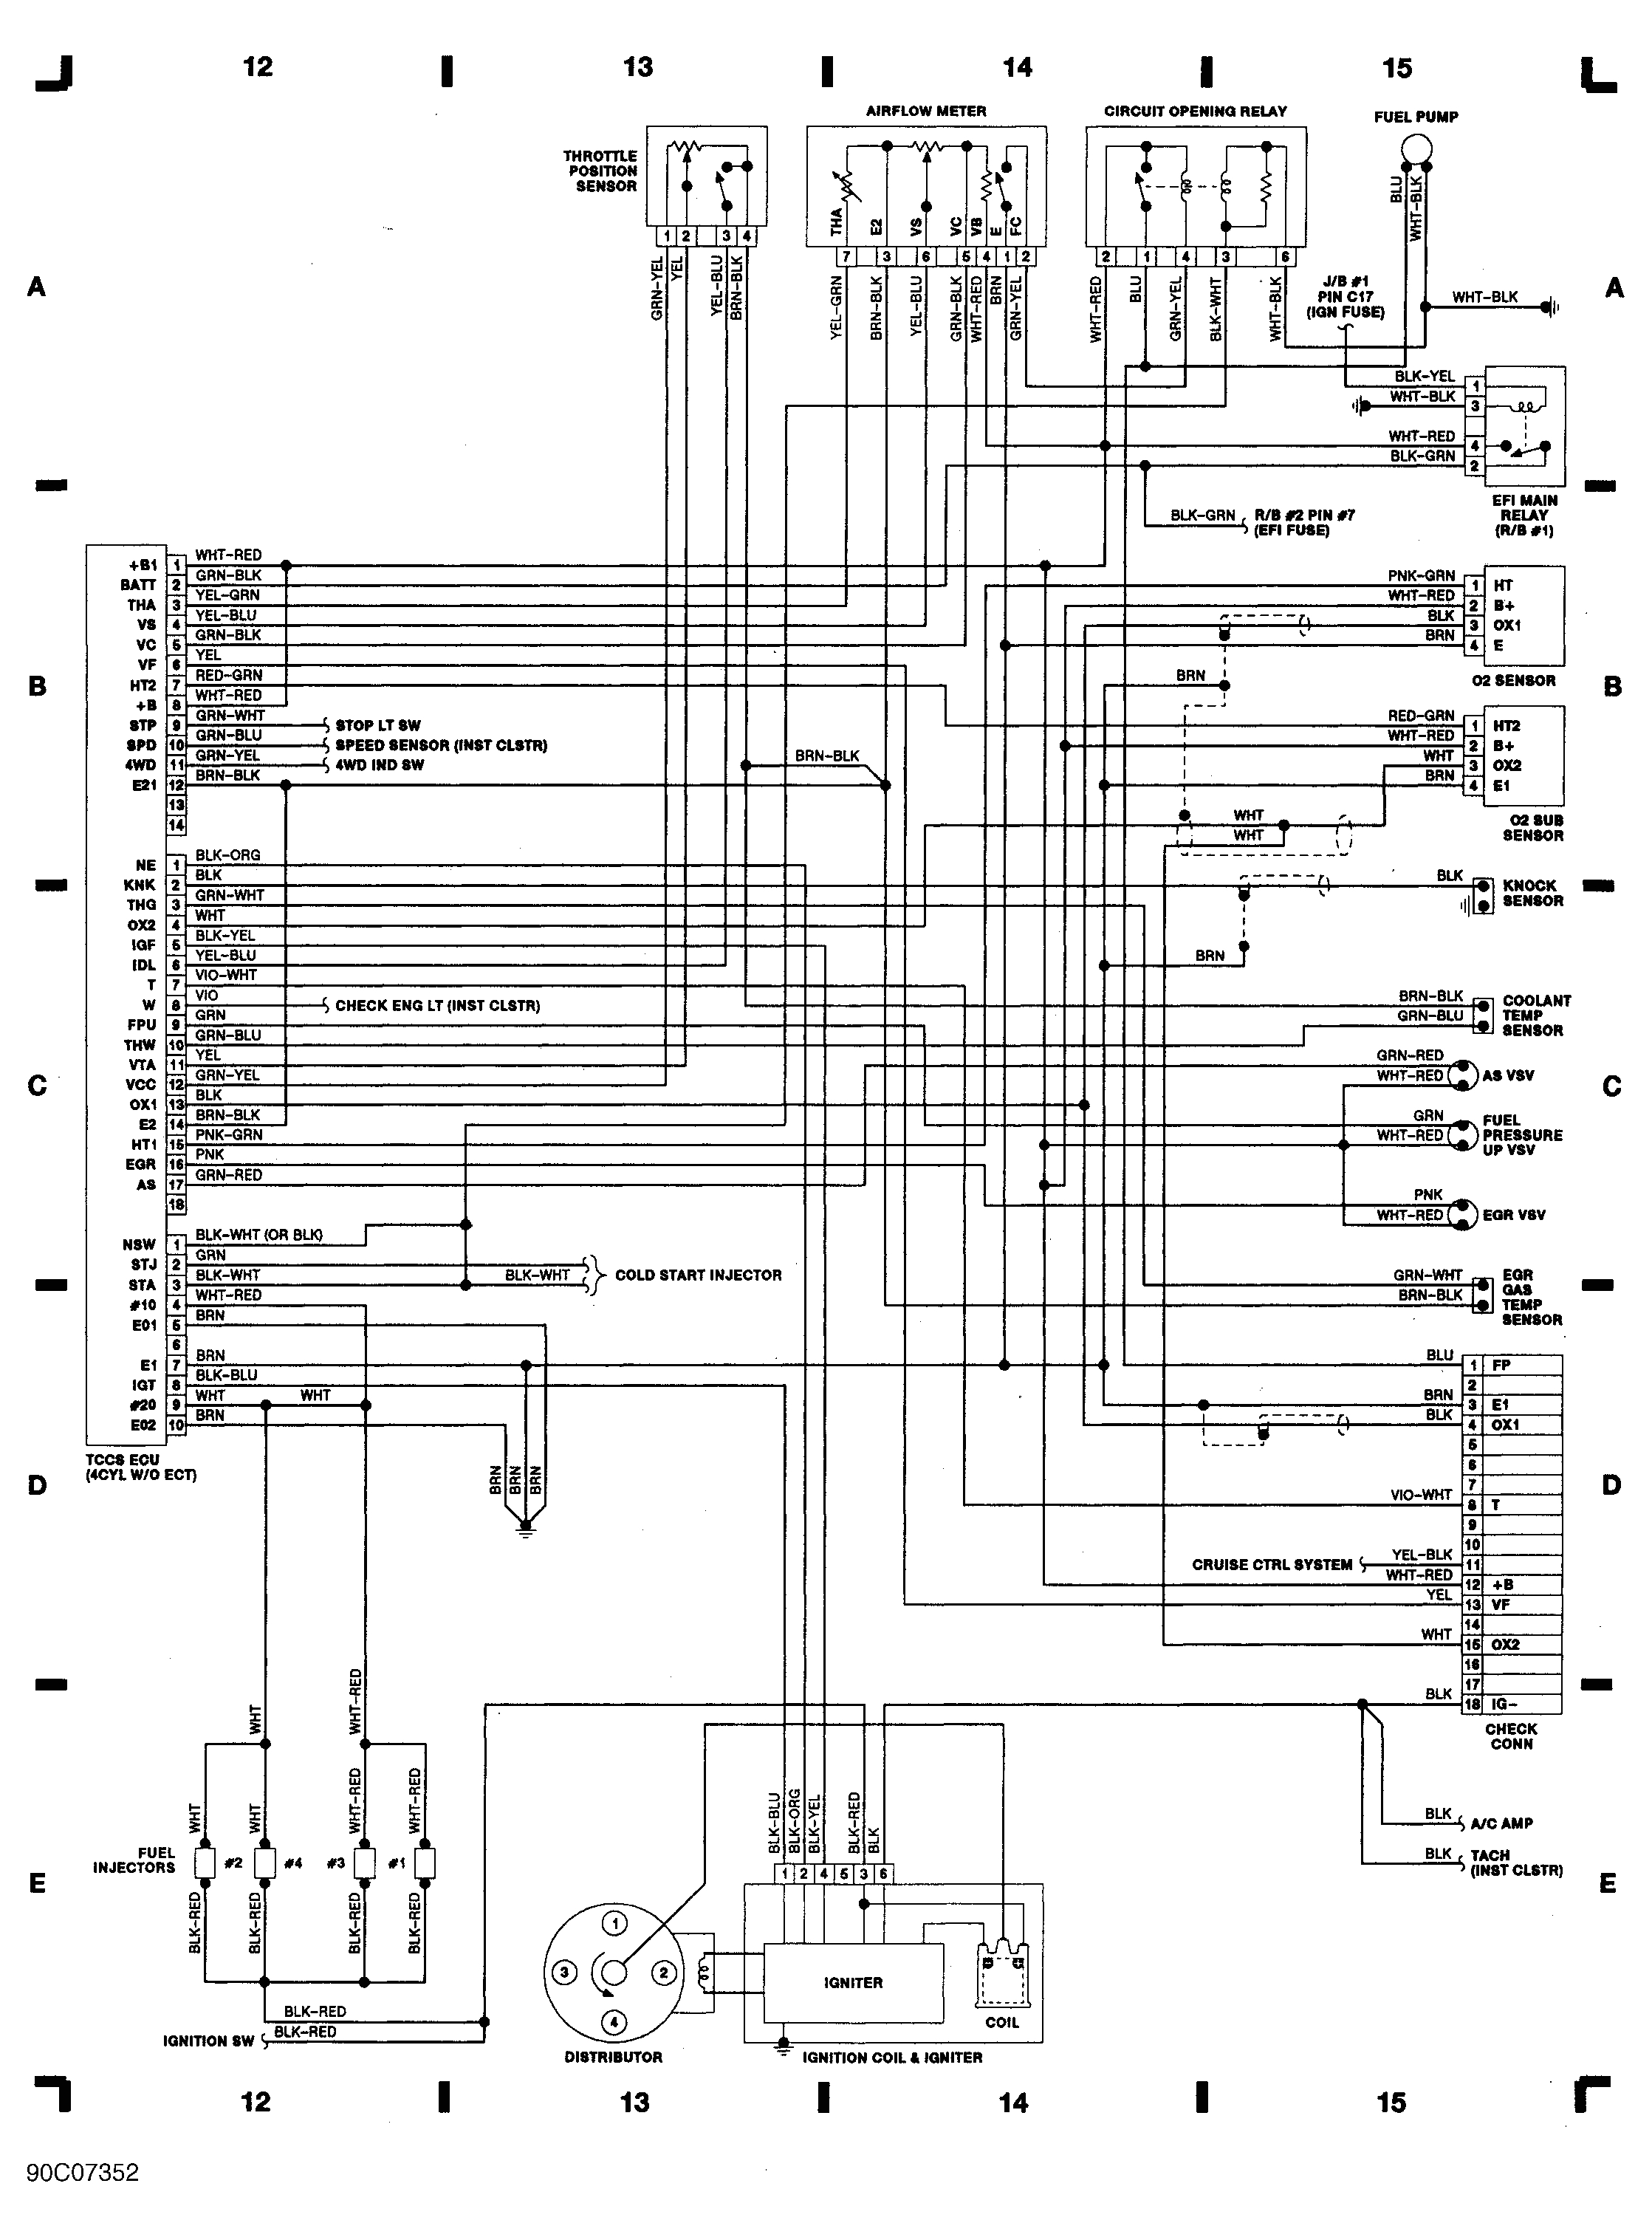 1990 toyota pickup wiring diagram schematic wiring diagrams recent 1990 toyota pickup wiring diagram schematic blog